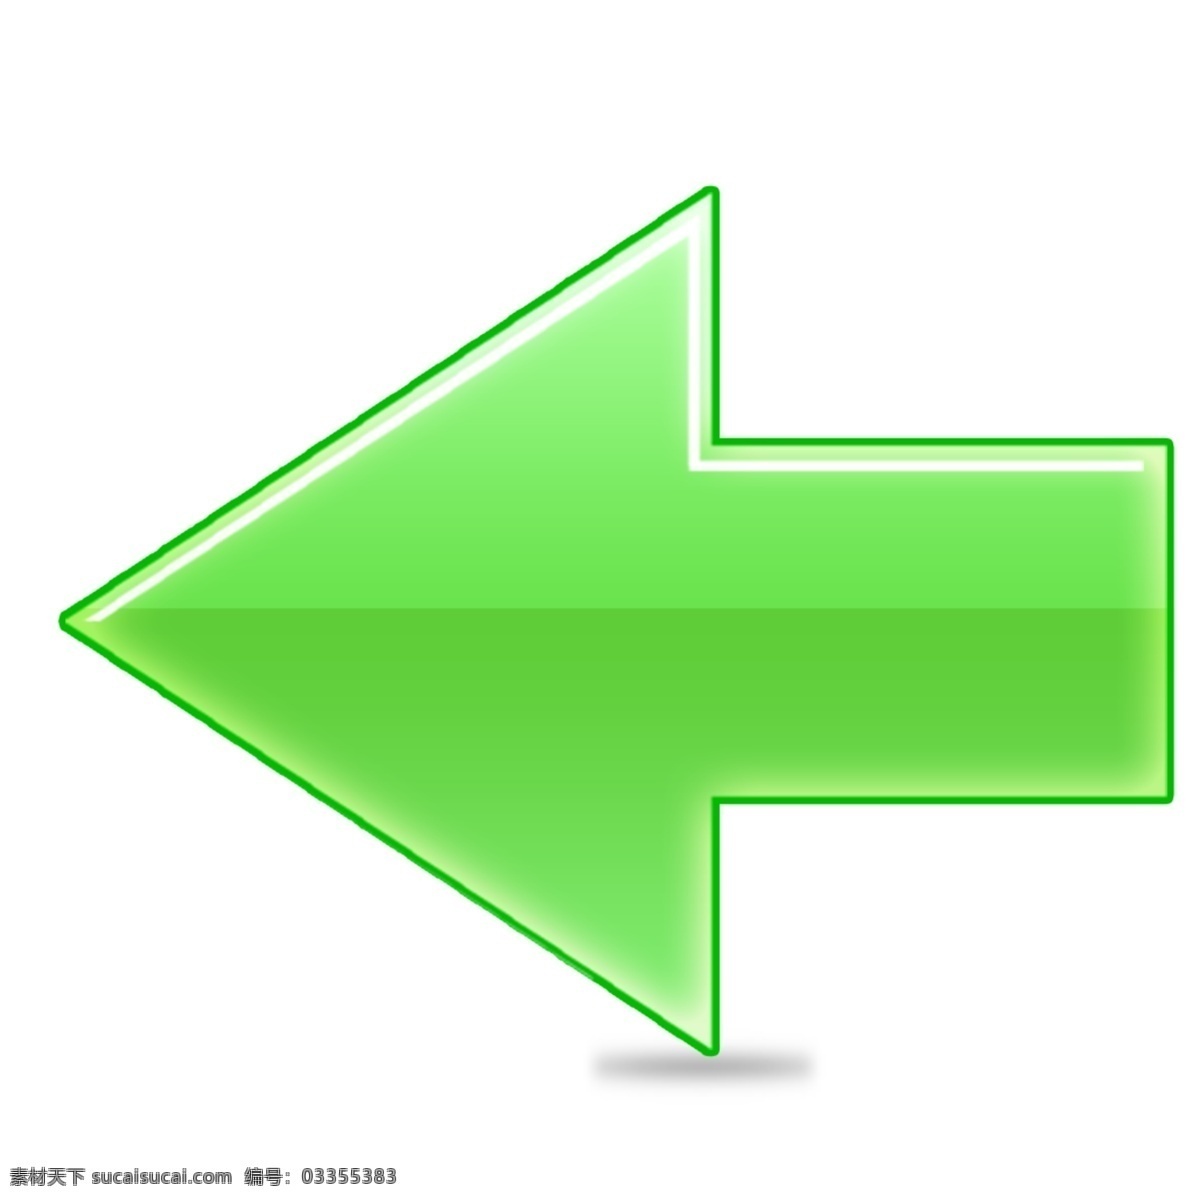 绿色 网页 左 箭头 指标 icon 图标 图标设计 icon设计 icon图标 网页图标 箭头图标 指标icon 箭头icon 左箭头图标 左箭头